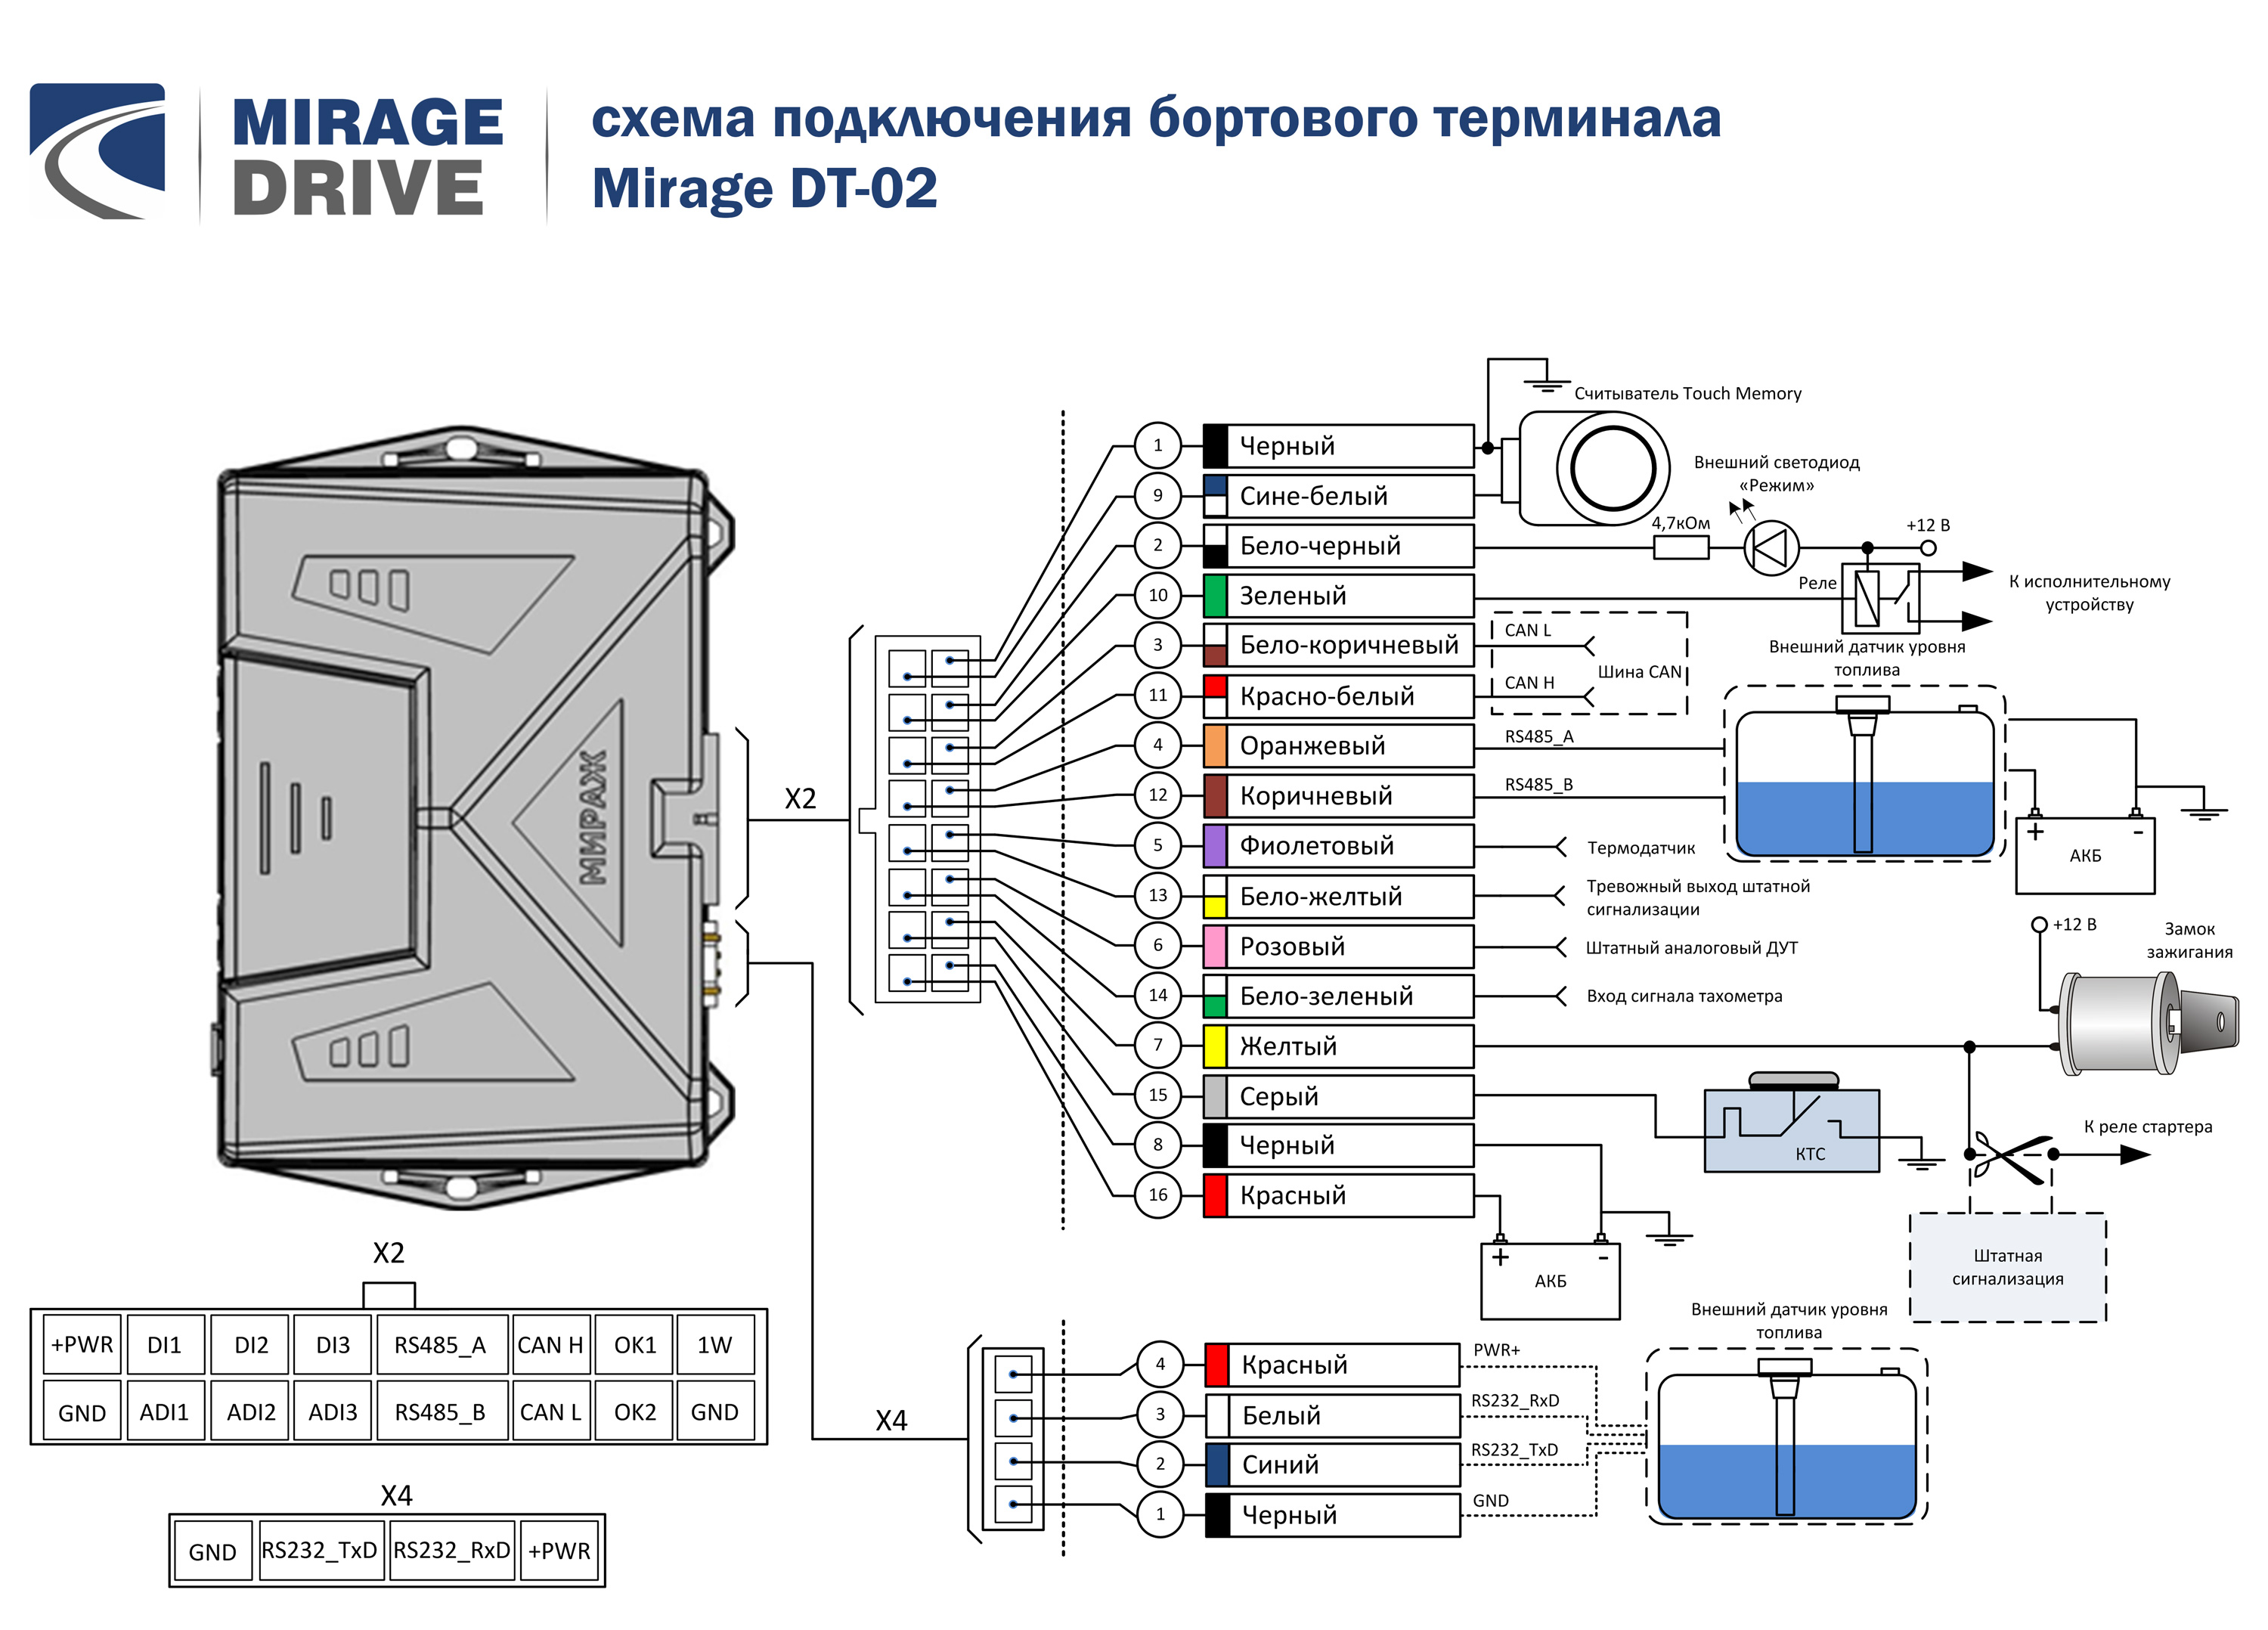 Схема подключения Mirage DT-02